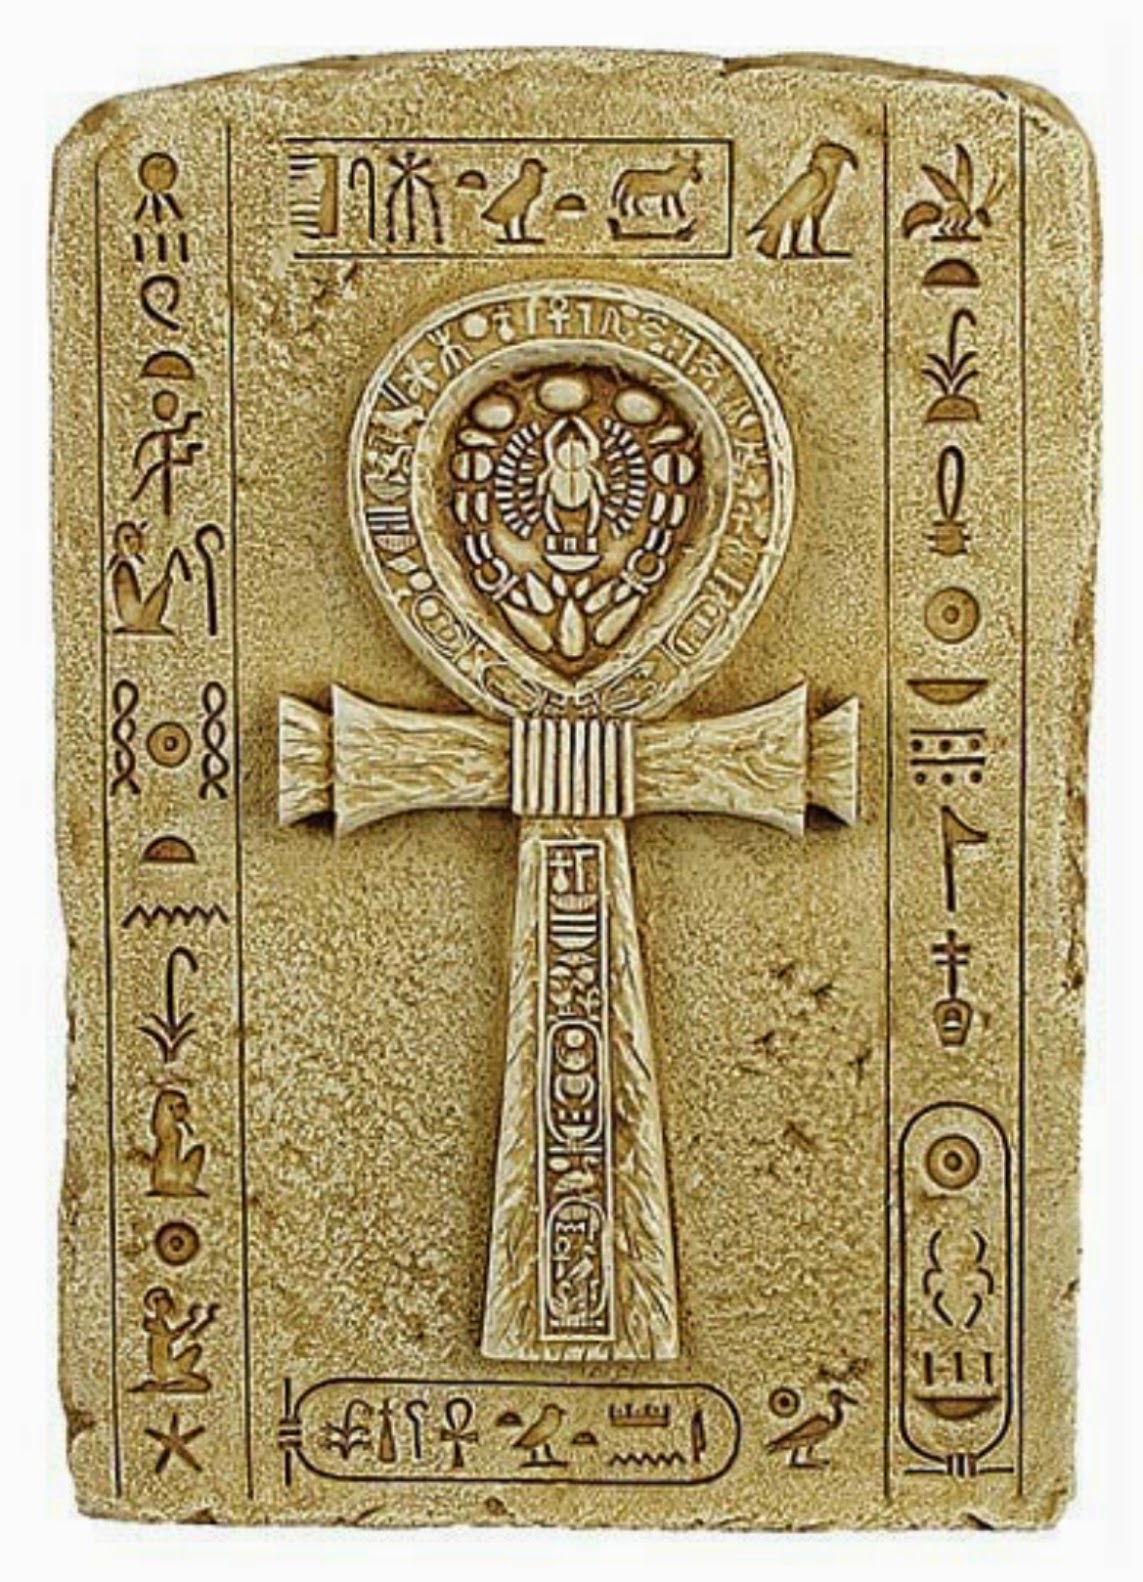 Тет ра. Крест анкх древний Египет. Древнеегипетский крест анх. Анх Египетский символ. Знак АКХ древний Египет.